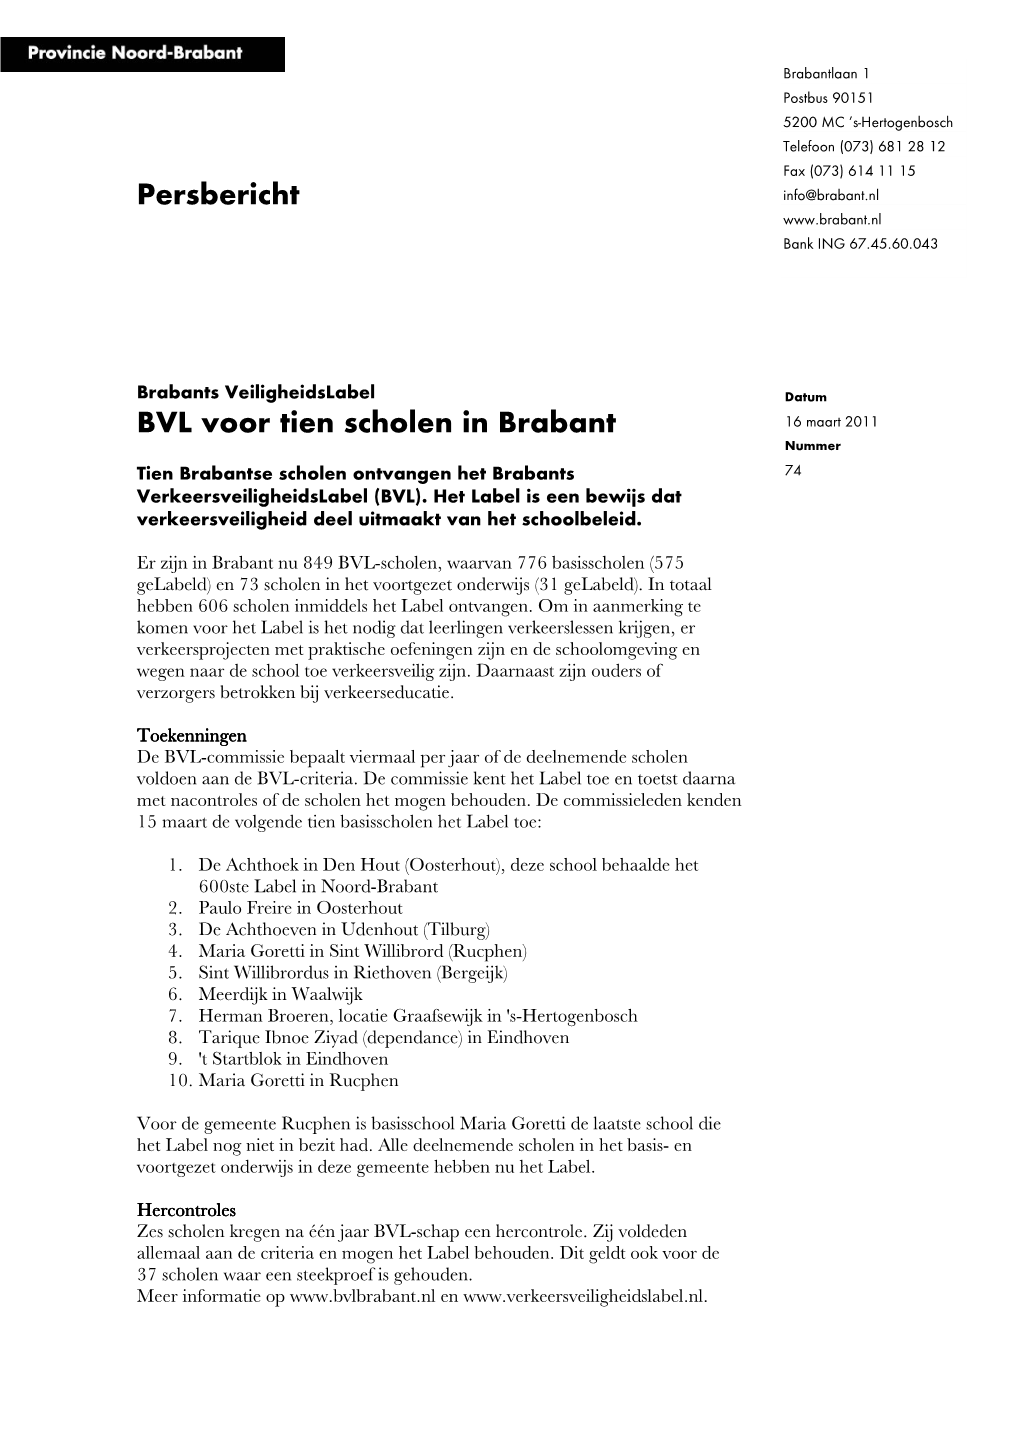 Brabantlaan 1 Postbus 90151 5200 MC ’S-Hertogenbosch Telefoon (073) 681 28 12 Fax (073) 614 11 15 Persbericht Info@Brabant.Nl Bank ING 67.45.60.043